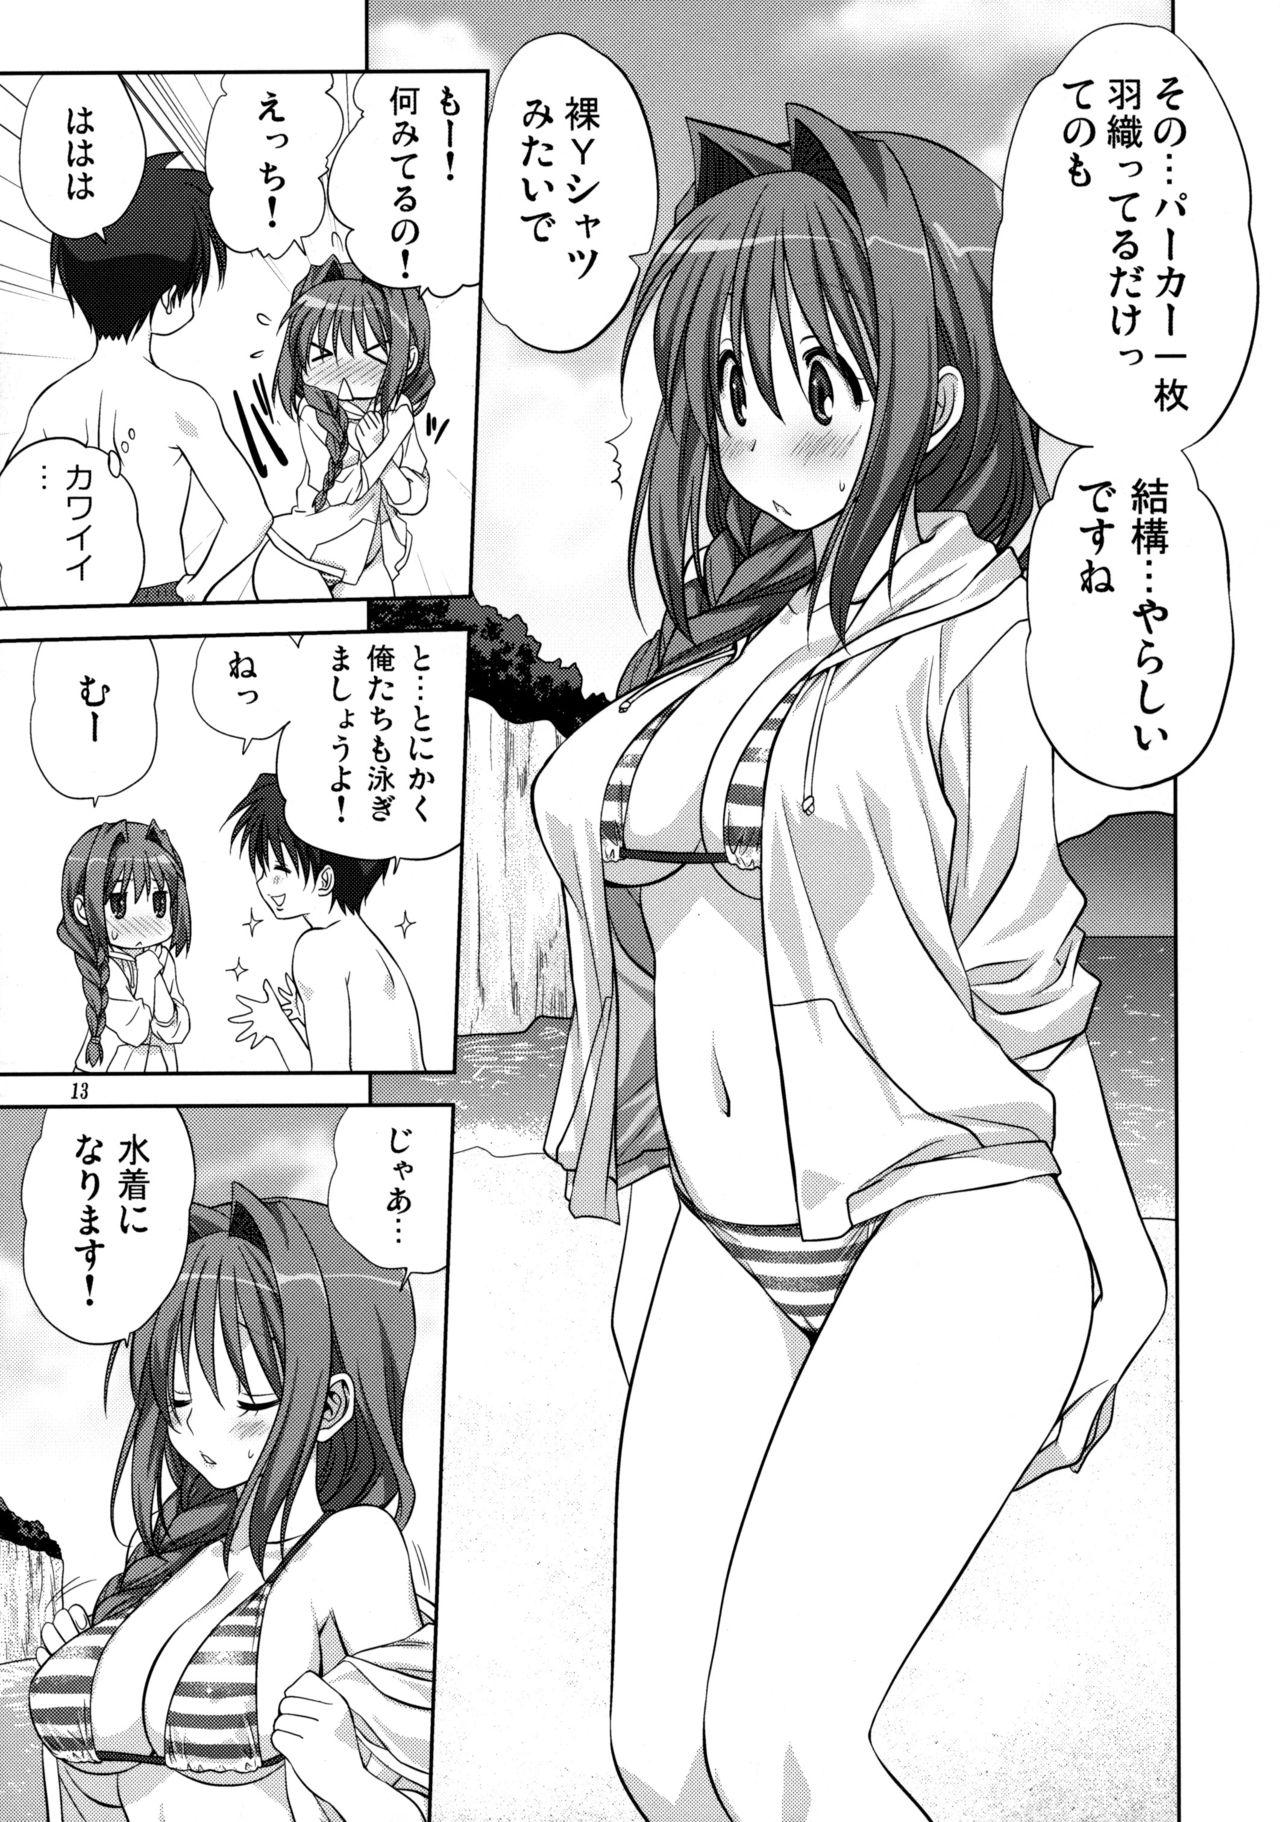 Porra Akiko-san to Issho 8 - Kanon Shower - Page 12